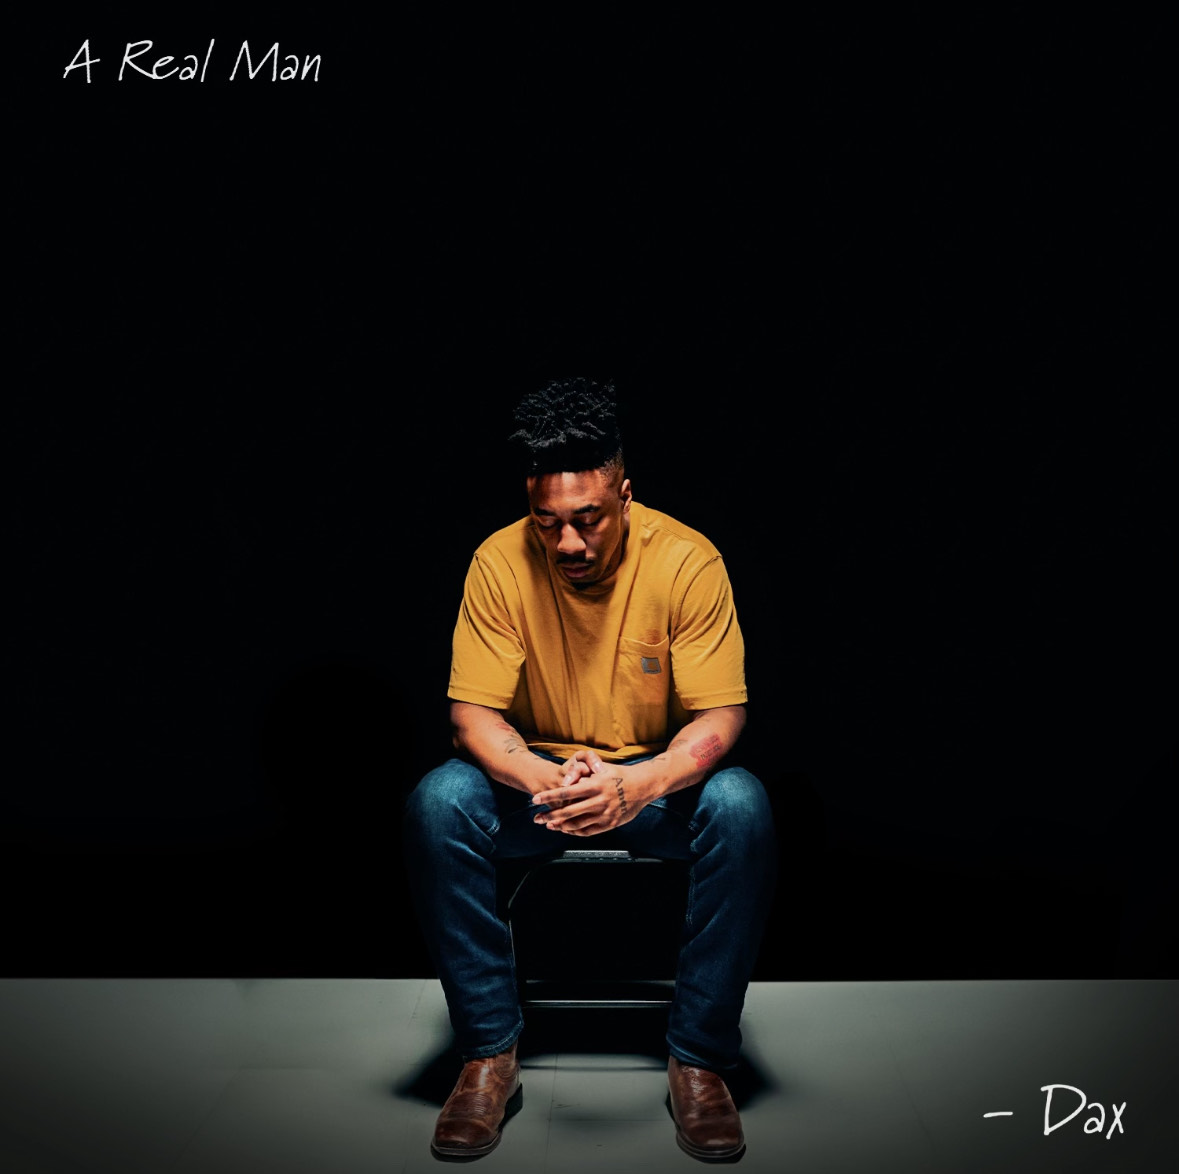  “A Real Man” de Dax: Un Homenaje a la Autenticidad en las Relaciones